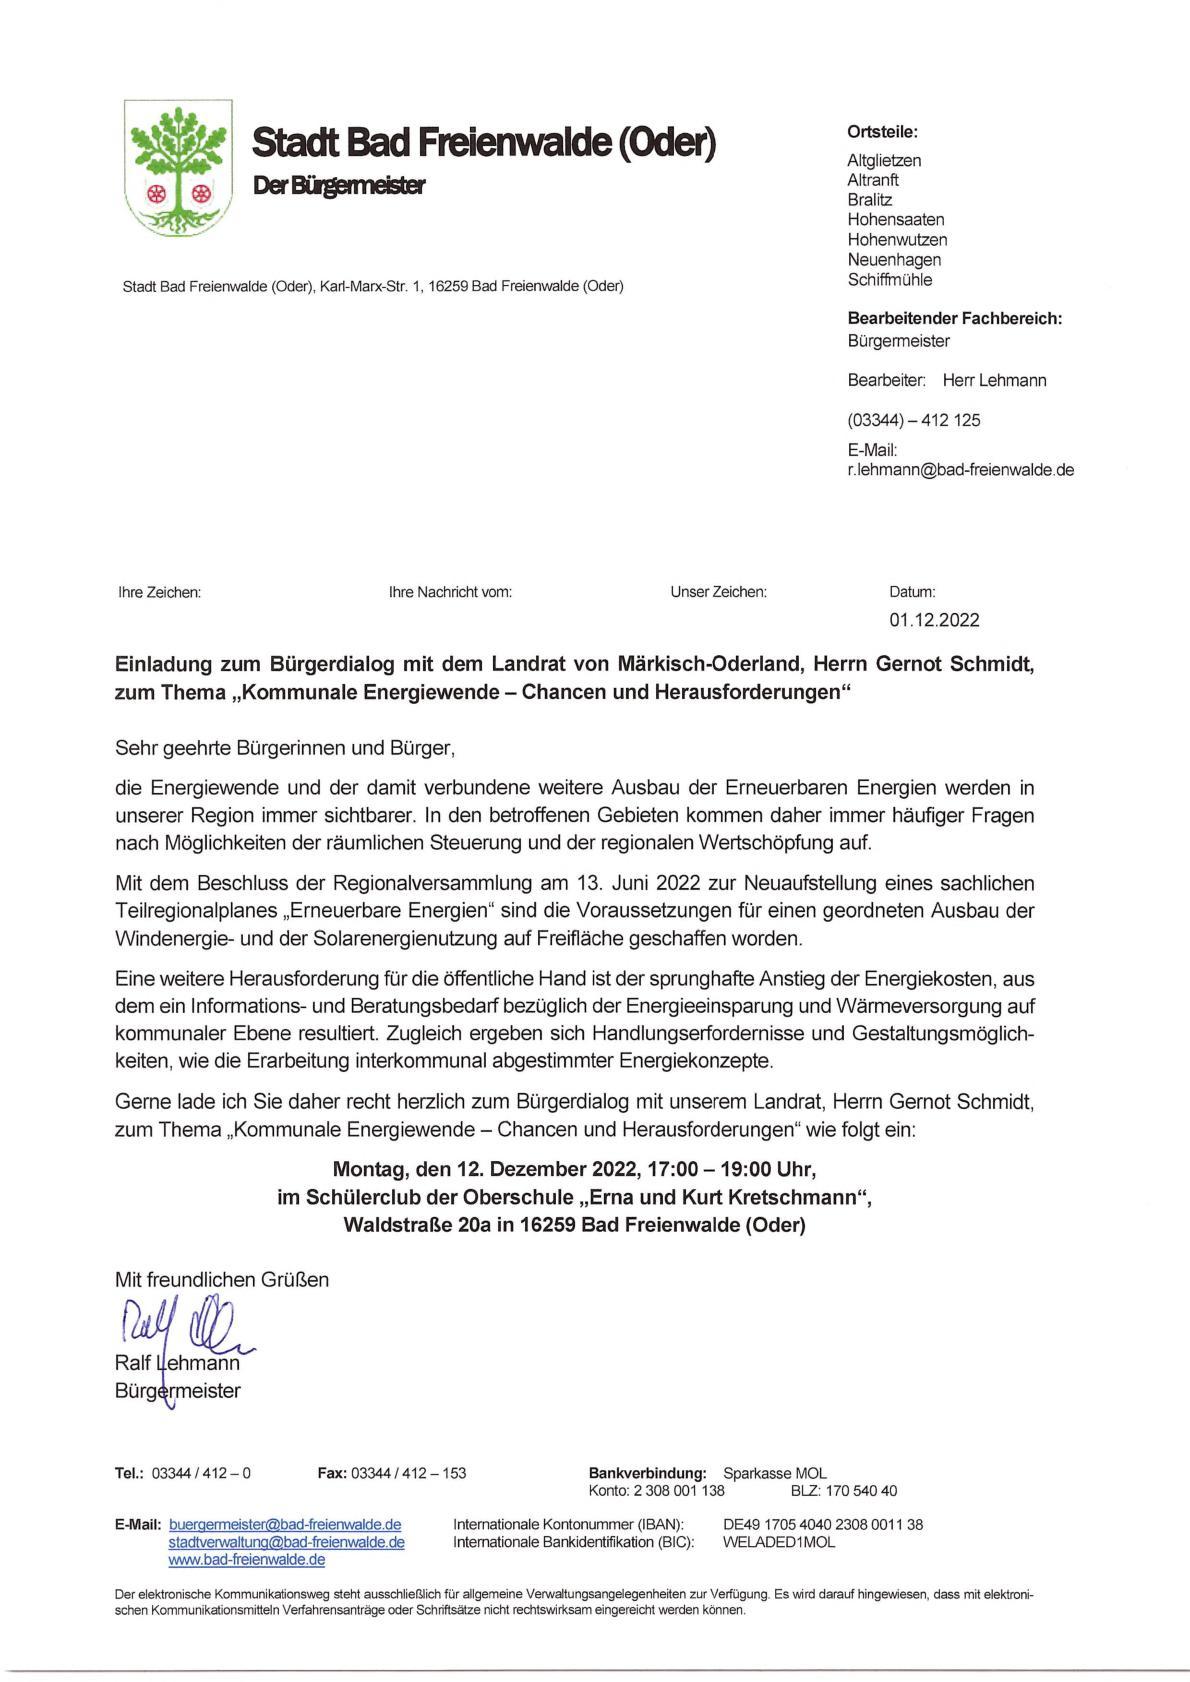 Einladung zum Bürgerdialog "Kommunale Energiewende"  am 12.12.2022